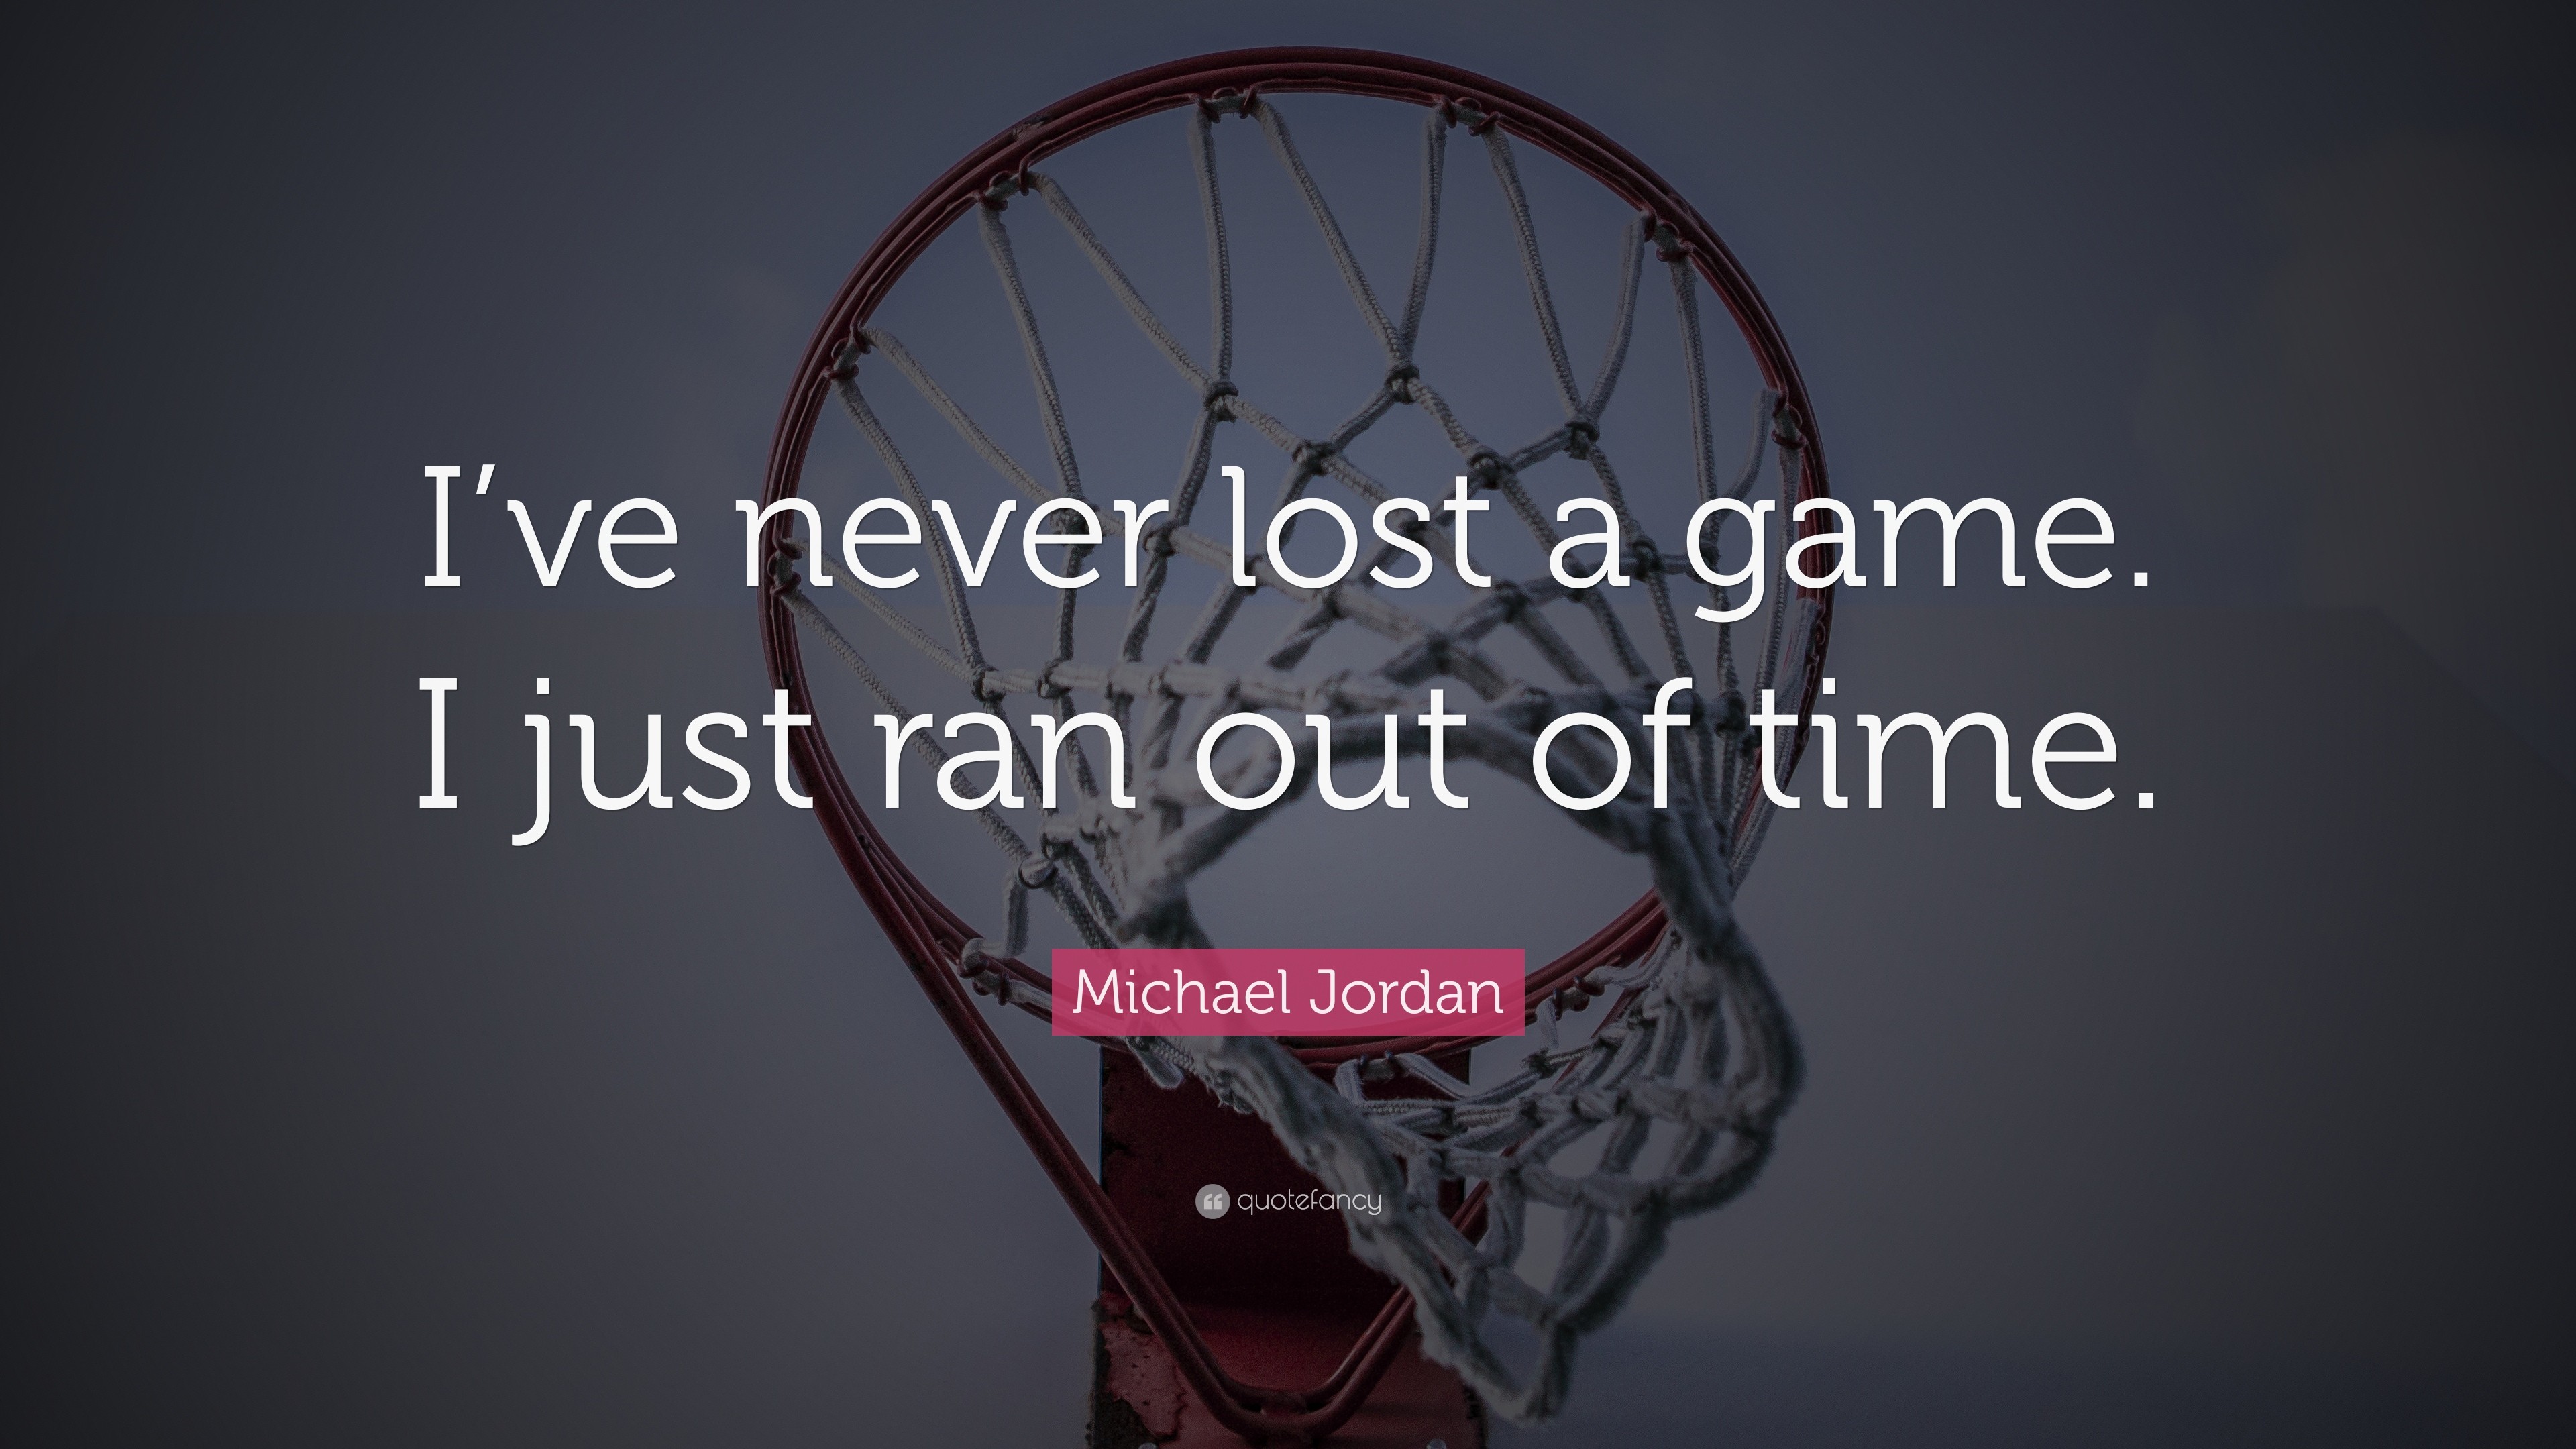 Michael Jordan, Quote, Text, Motivational, Sport, Basketball, Nets